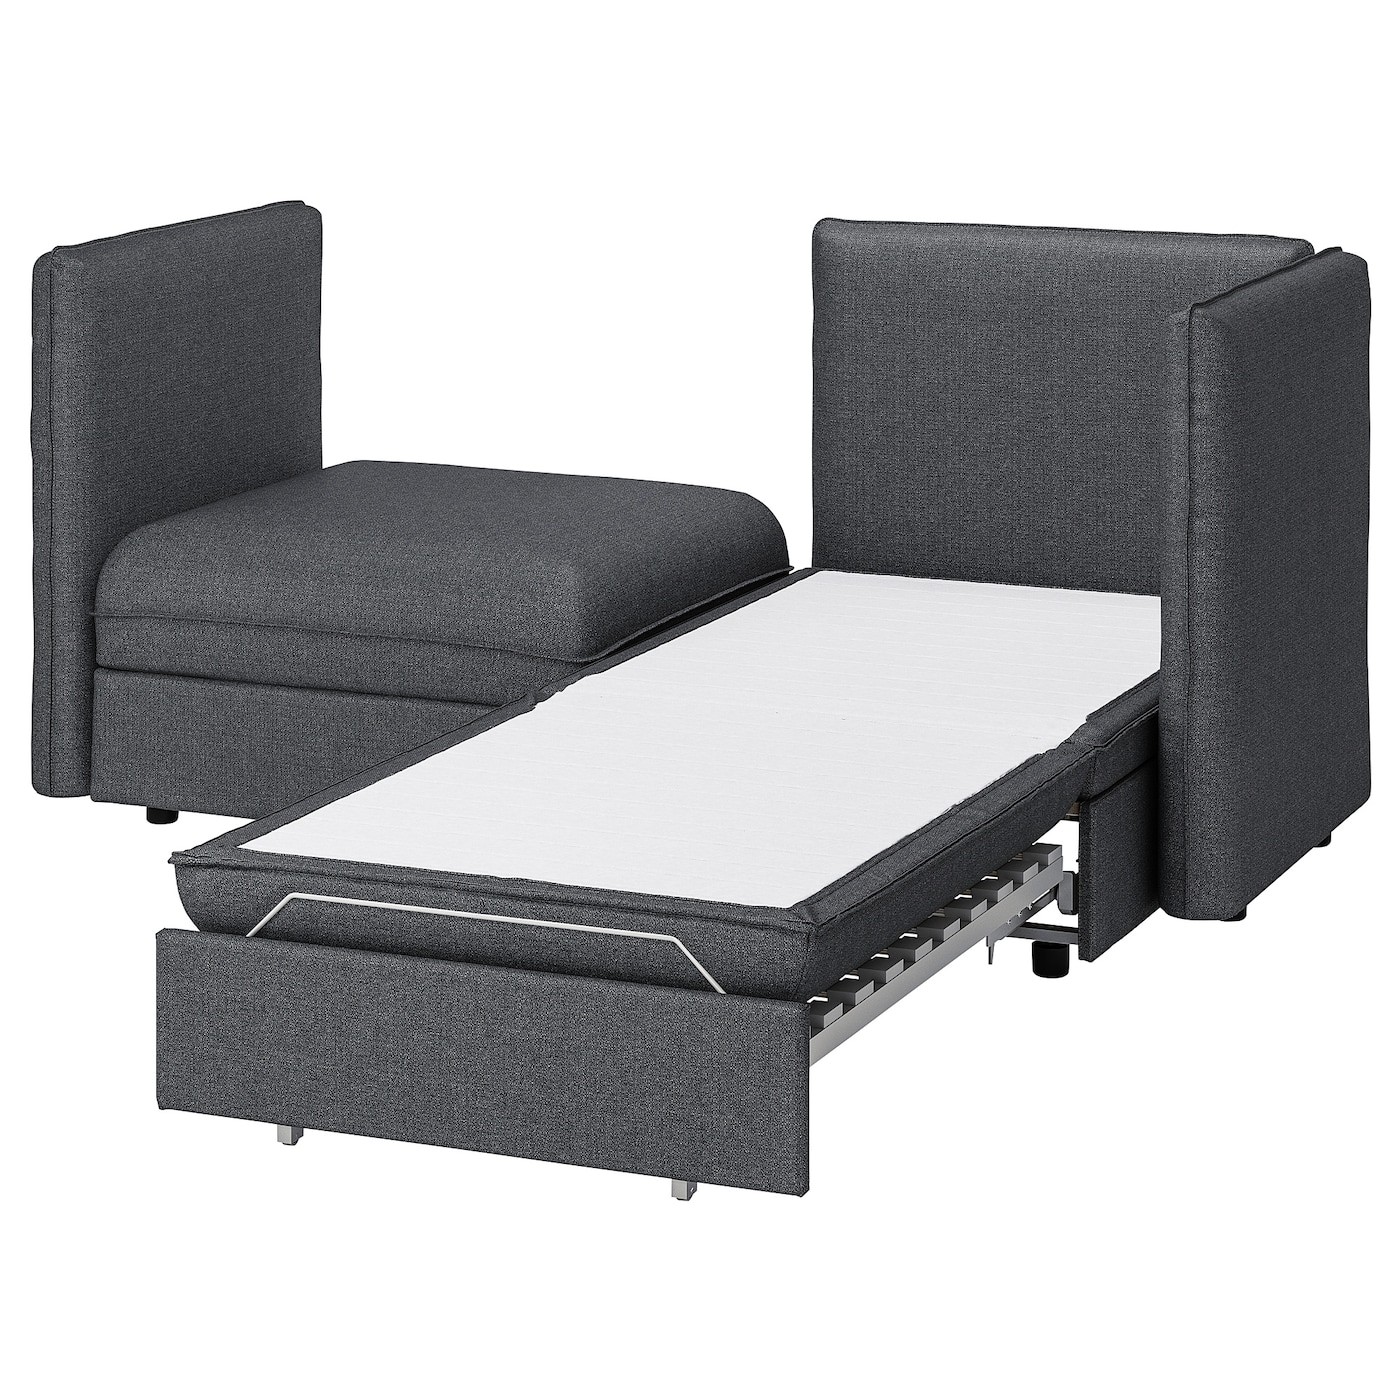 VALLENTUNA 2-seat modular sofa with sofa-bed